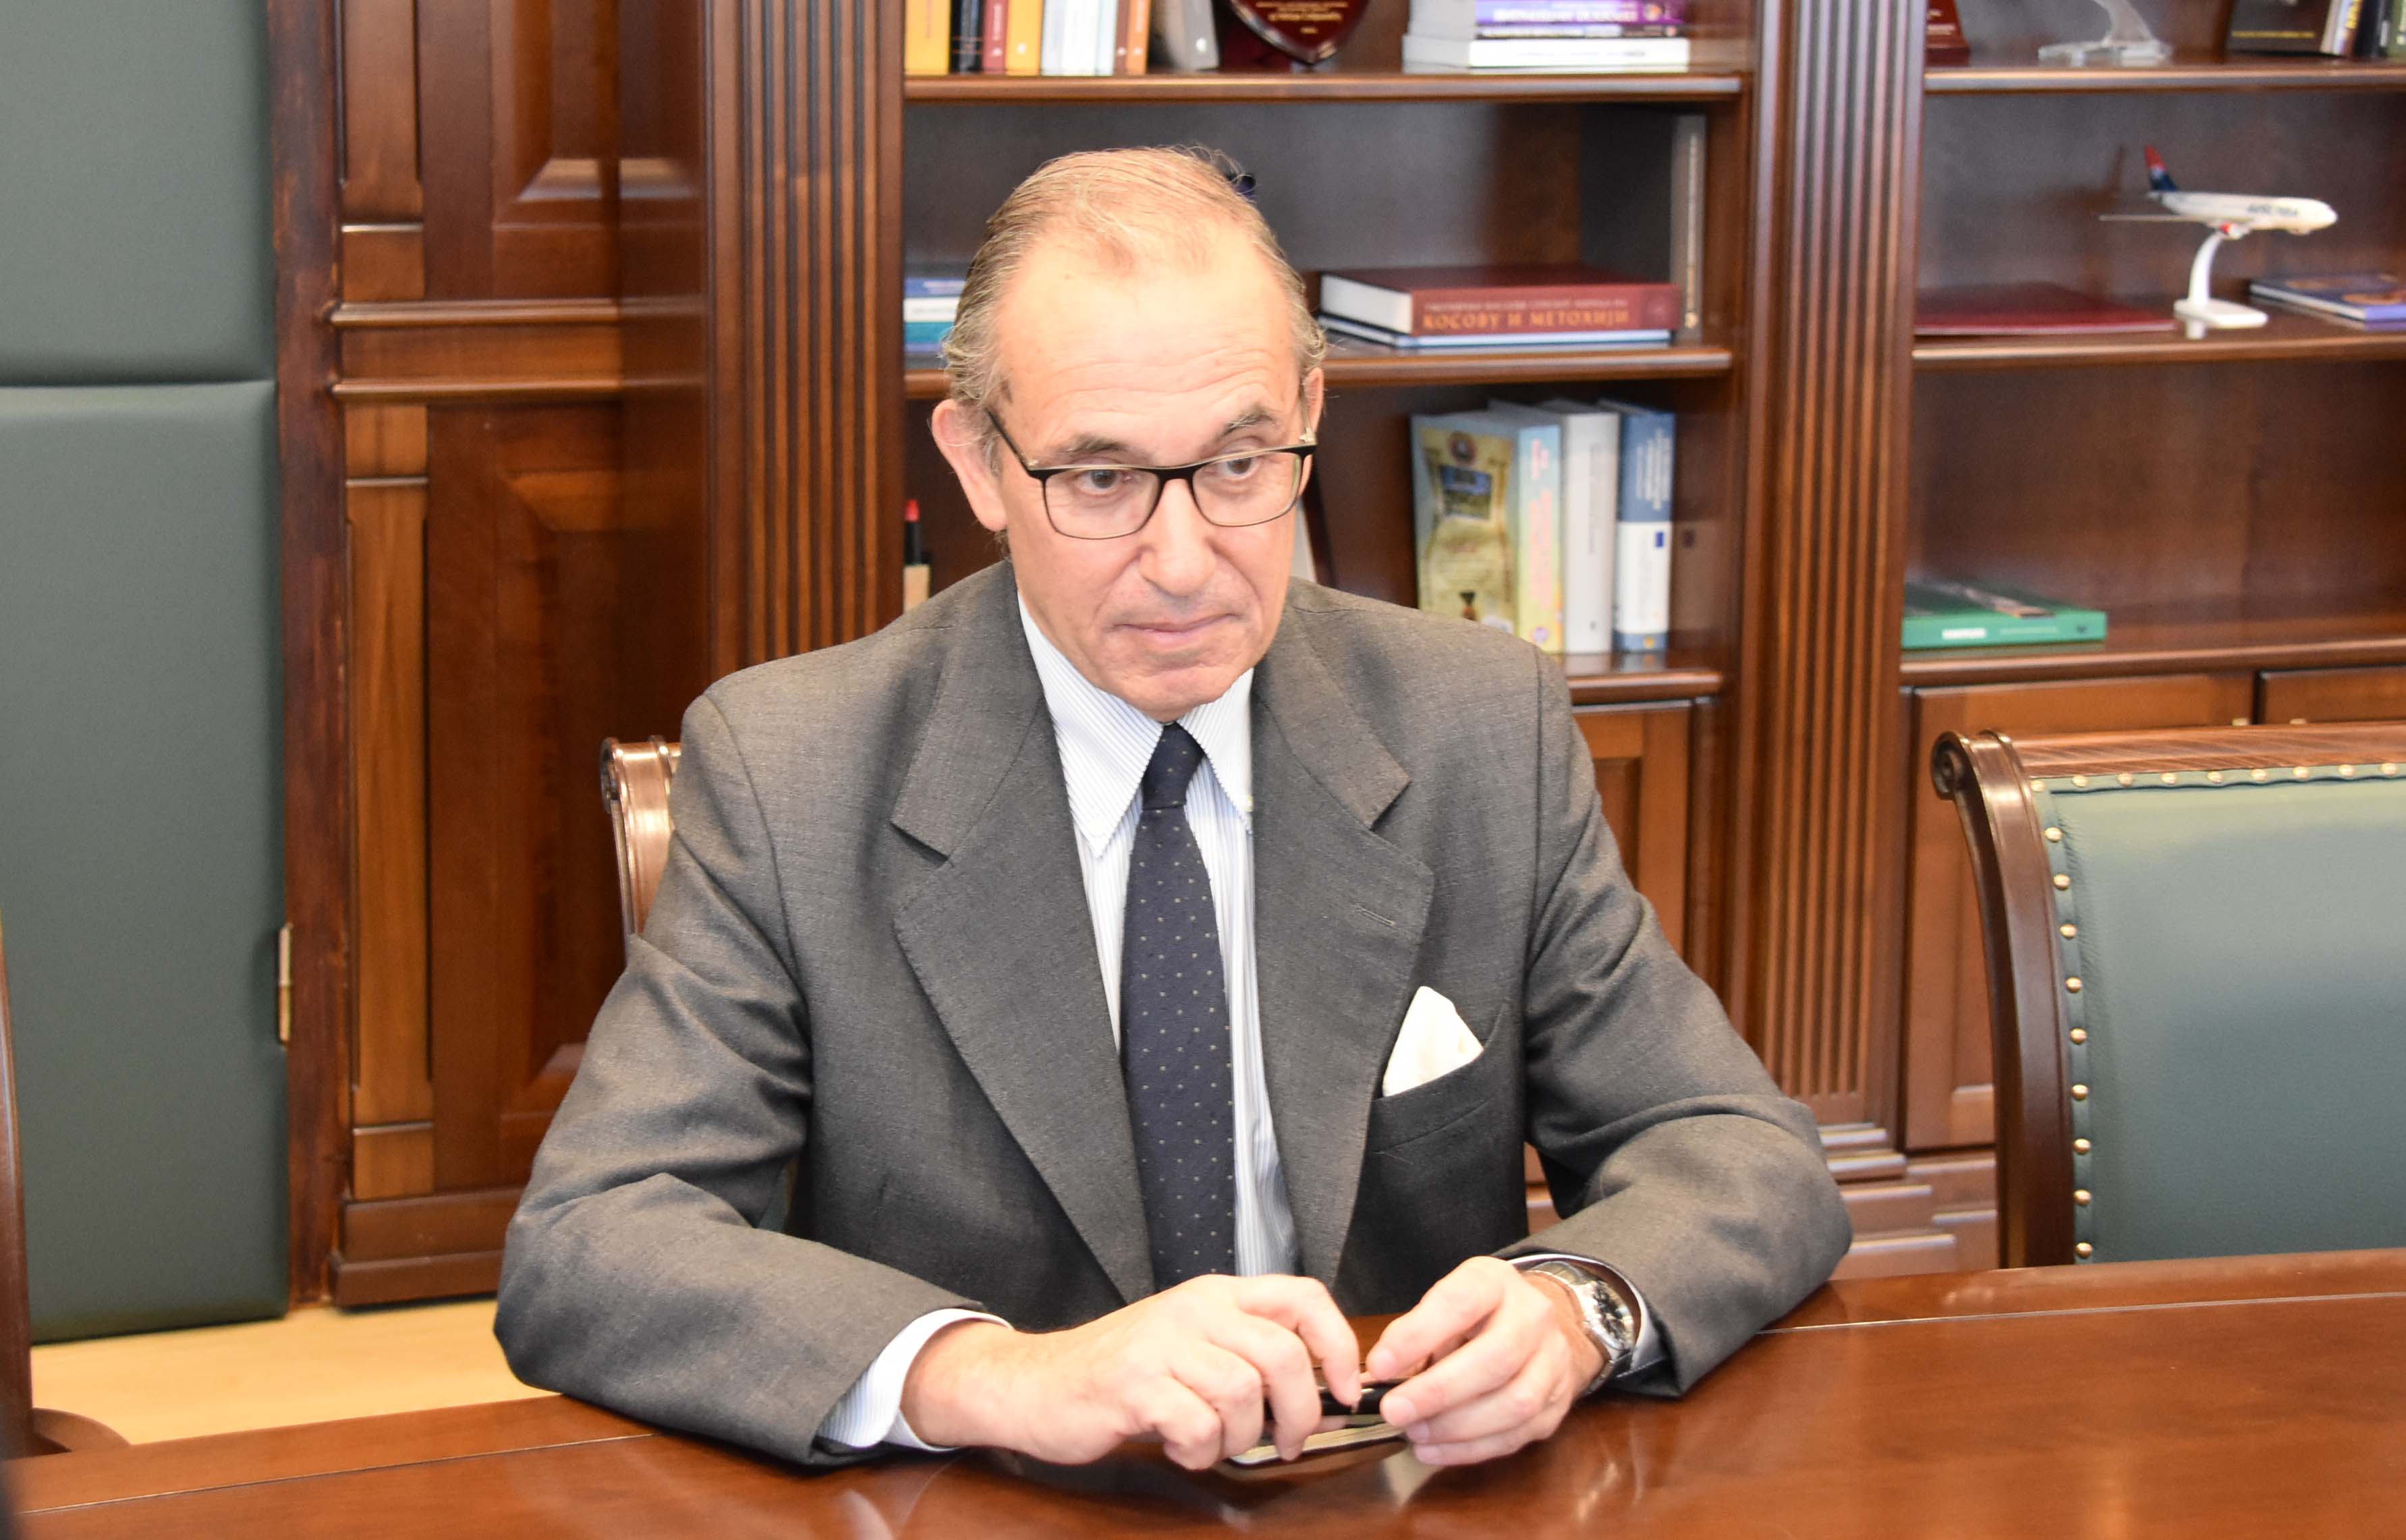 Ministar Stefanović sastao se sa novoimenovanim ambasadorom Republike Argentine